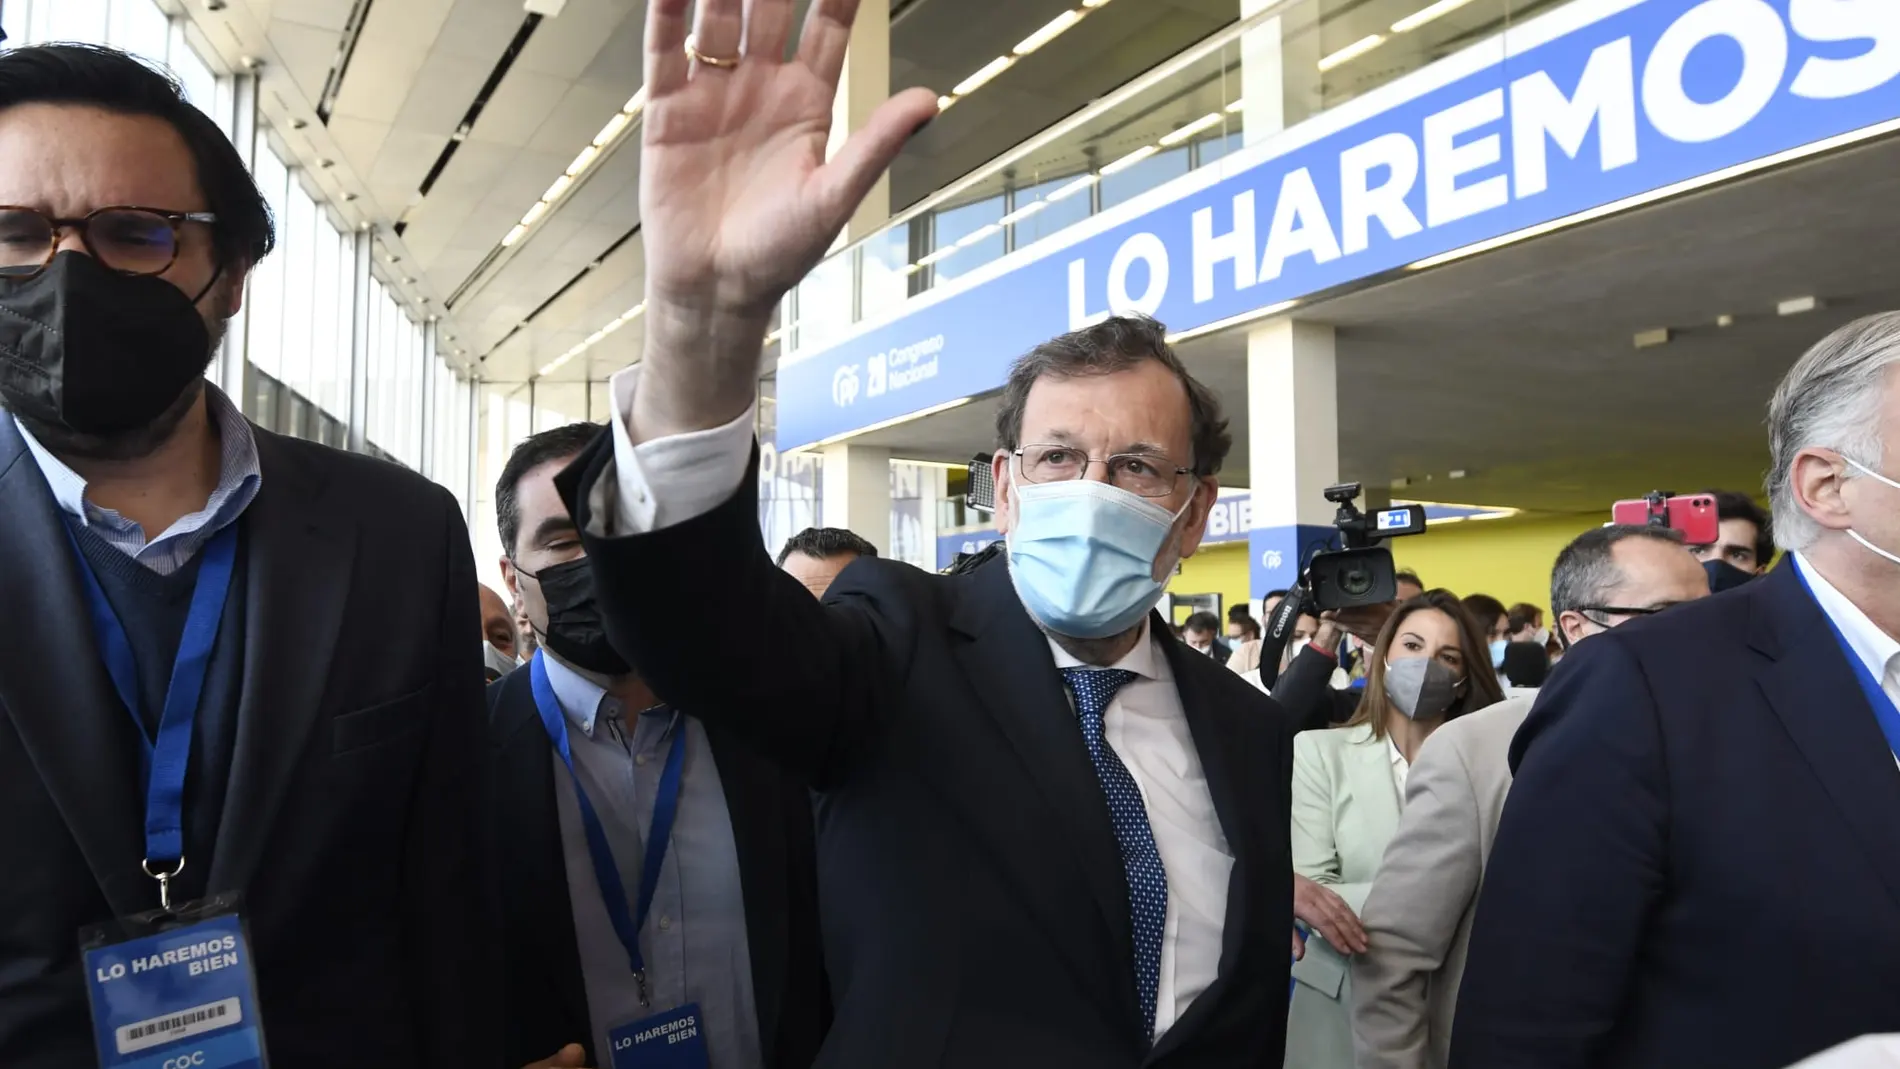 Mariano Rajoy entró al ritmo de "Peope have the power"